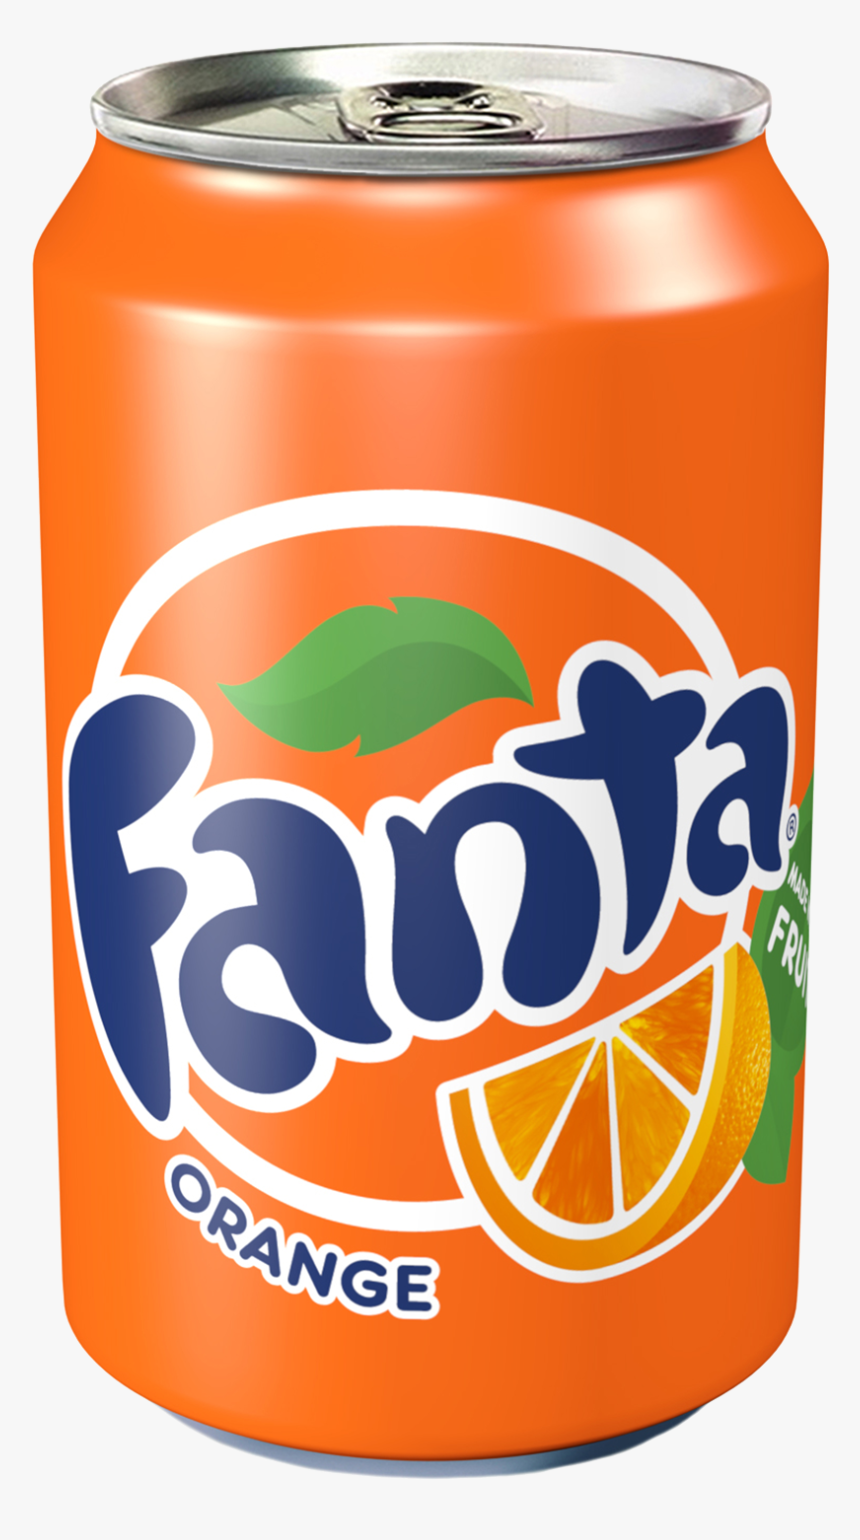 Coca Cola Clipart 330ml Png - Fanta Can, Transparent Png, Free Download